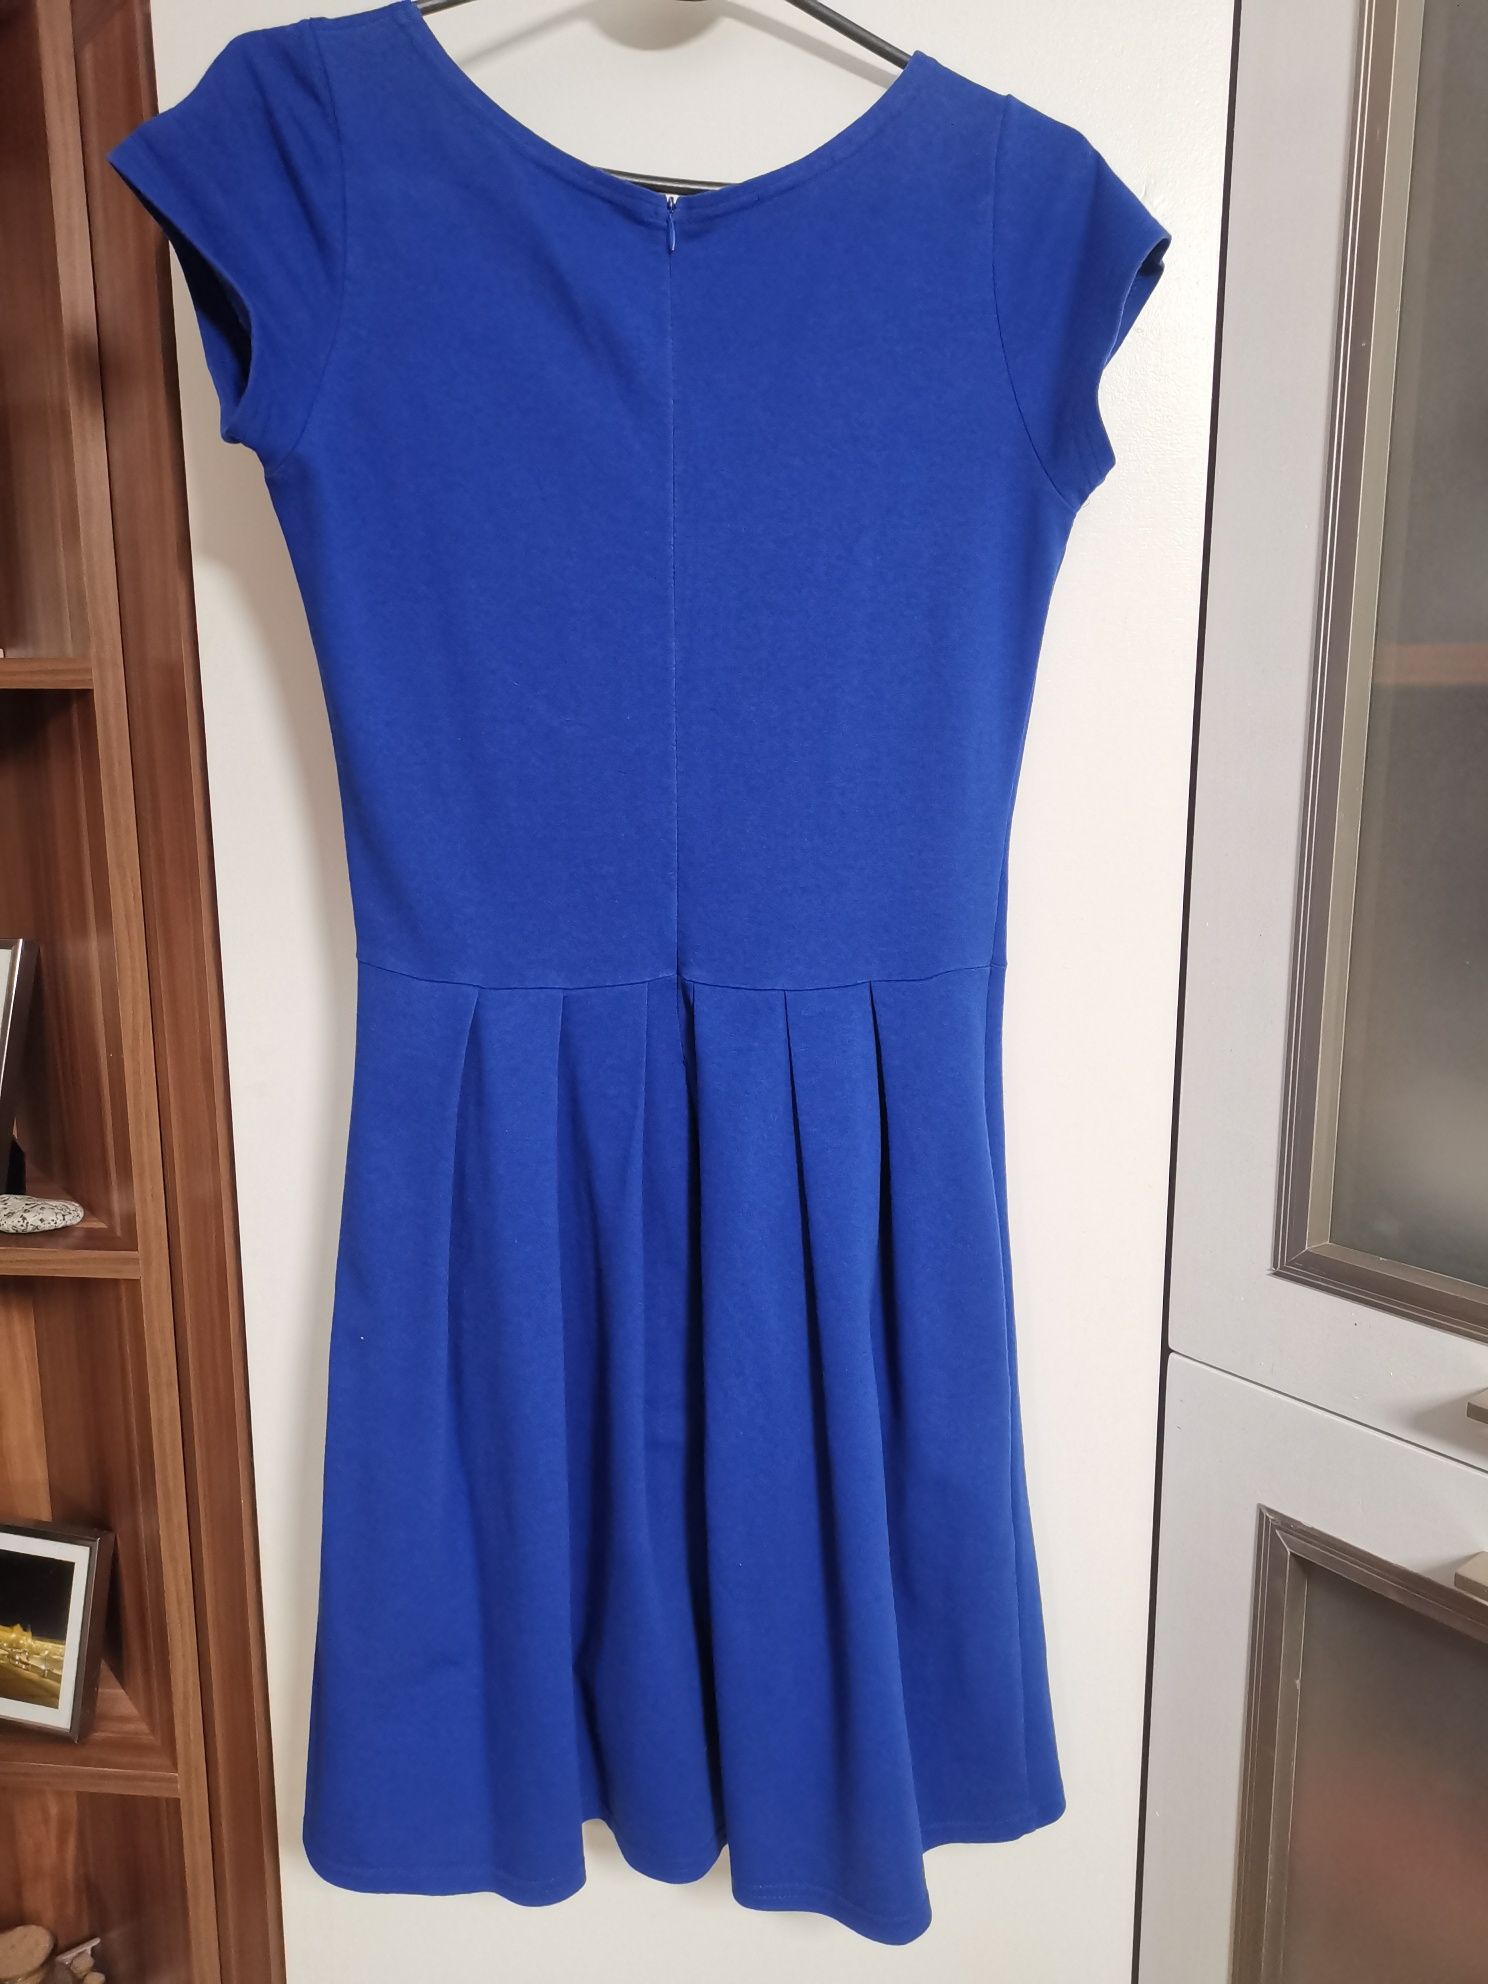 Niebieska/chabrowa sukienka na wiele okazji